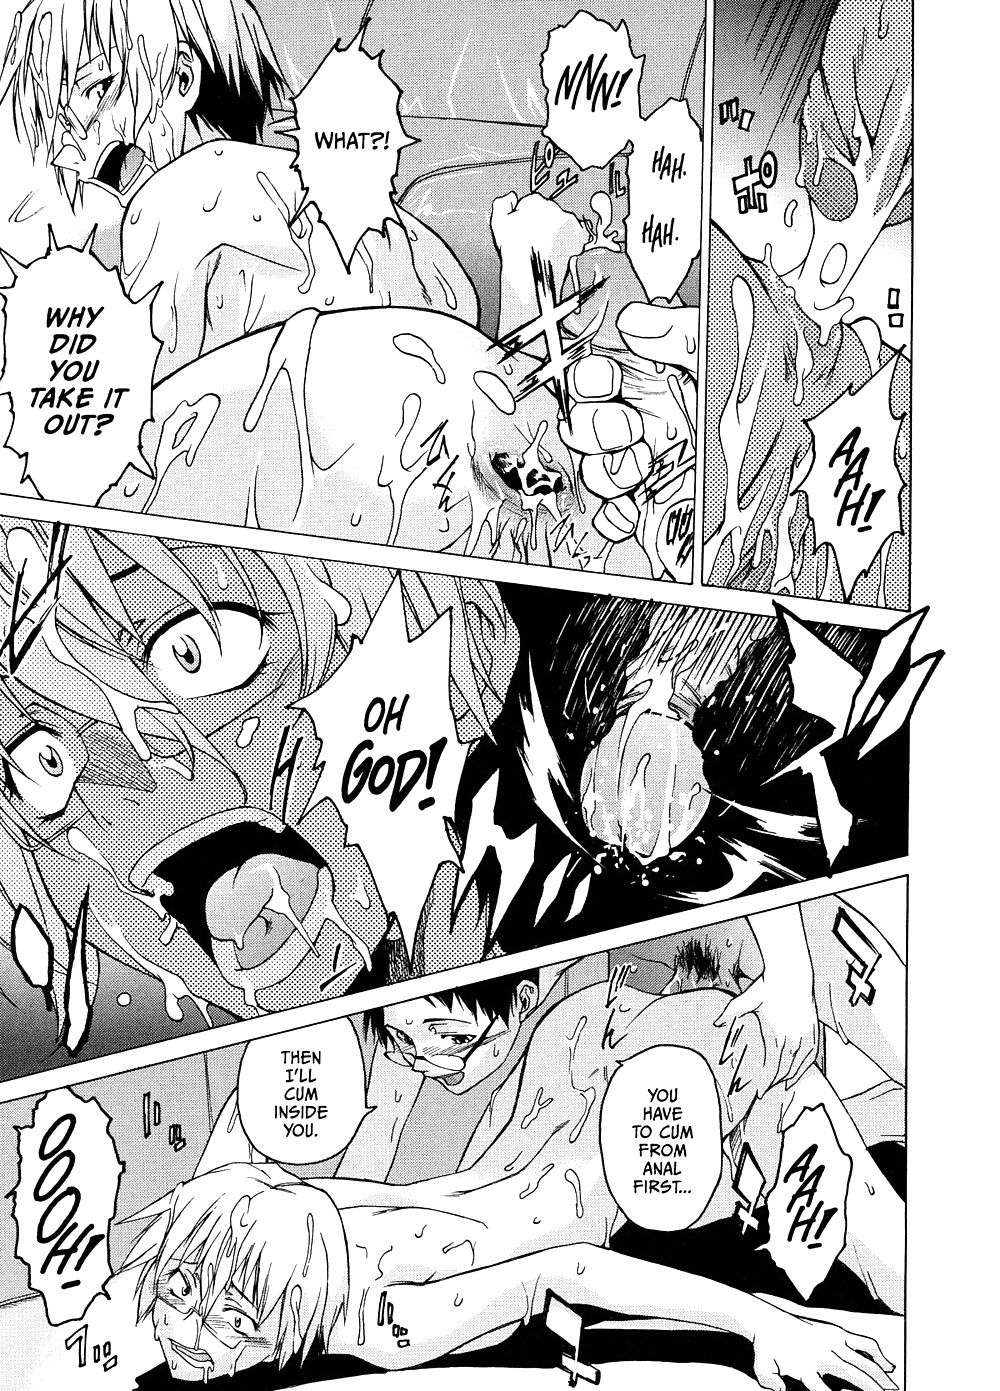 Domin-8 Me   Take On me   Hentai Manga Part 2 (15/98)